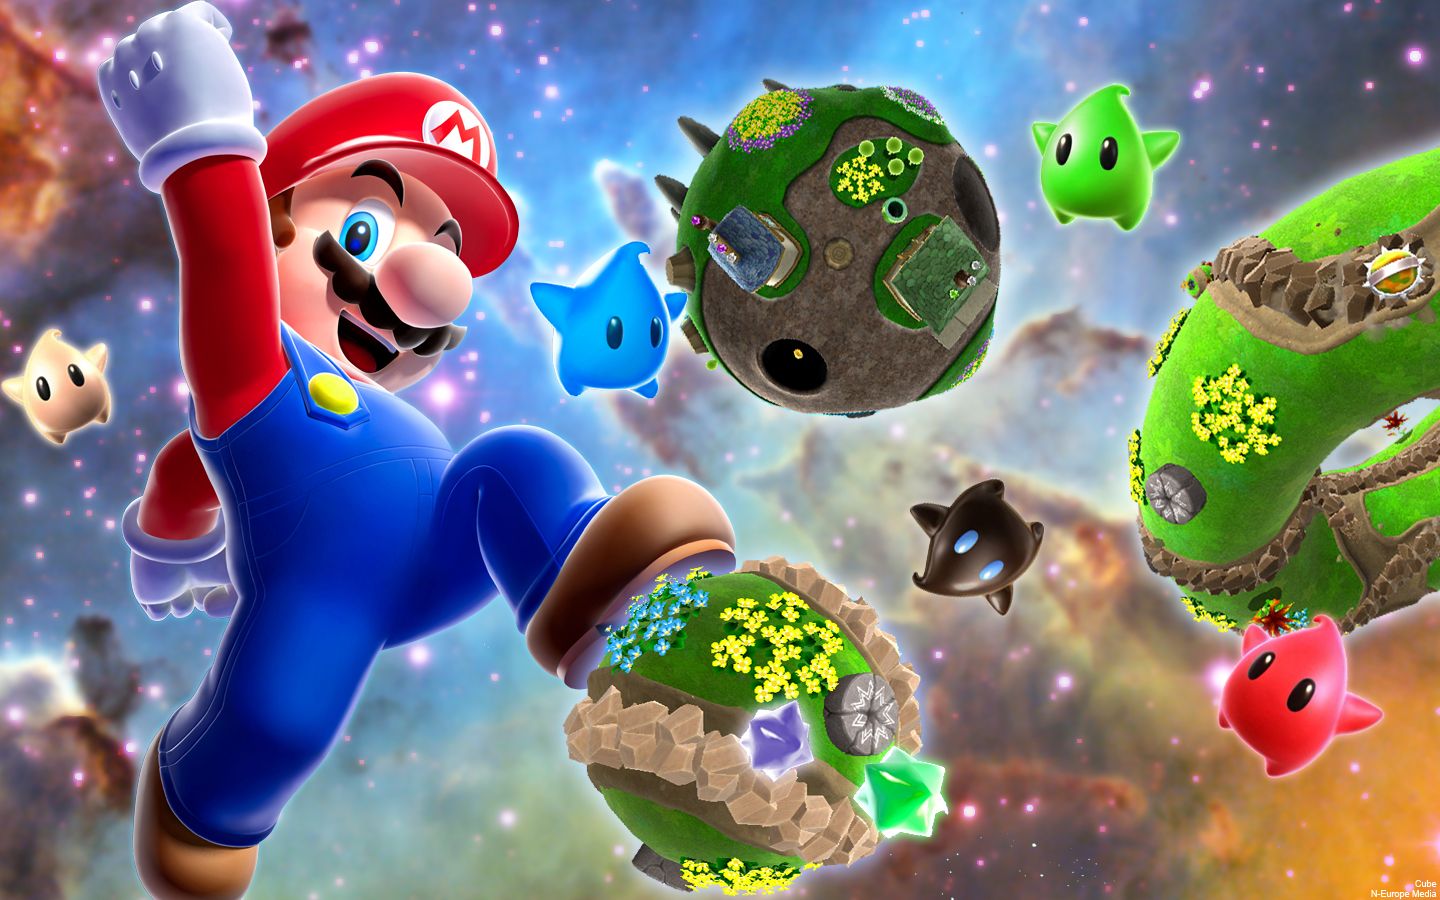 Super Mario Galaxy 2 Wallpaper